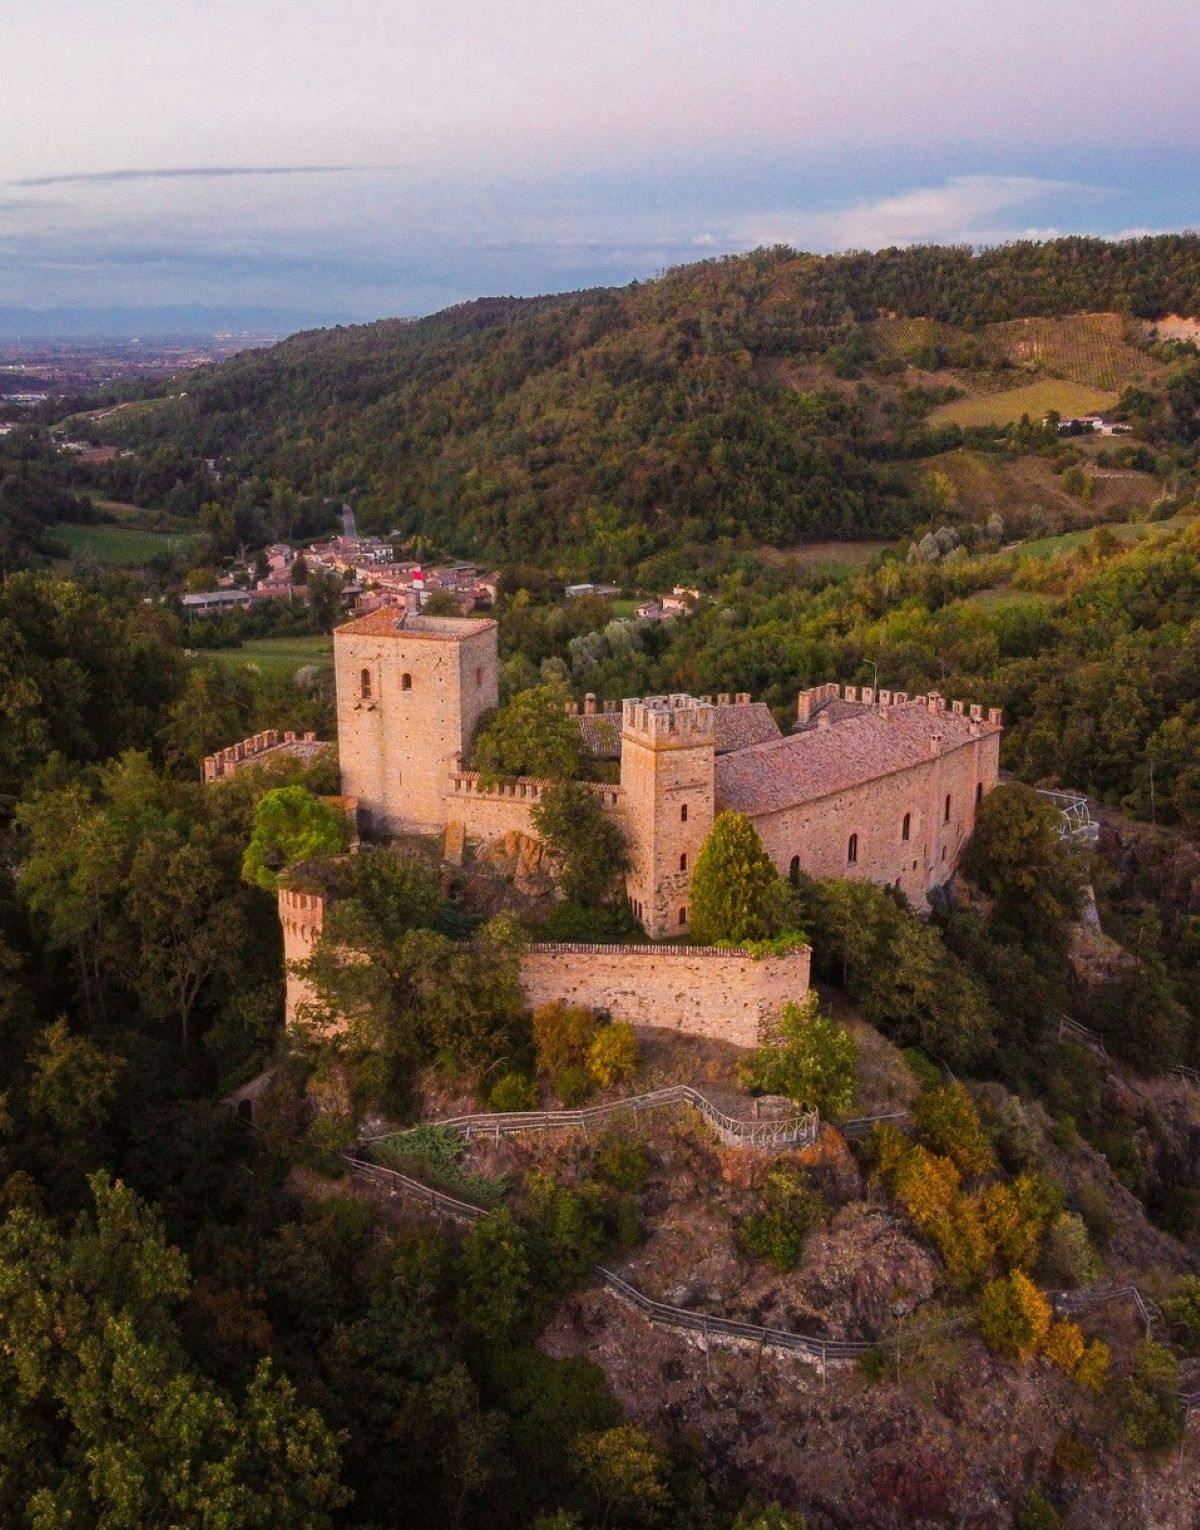 Geführte historische Tour durch Schloss Gropparello